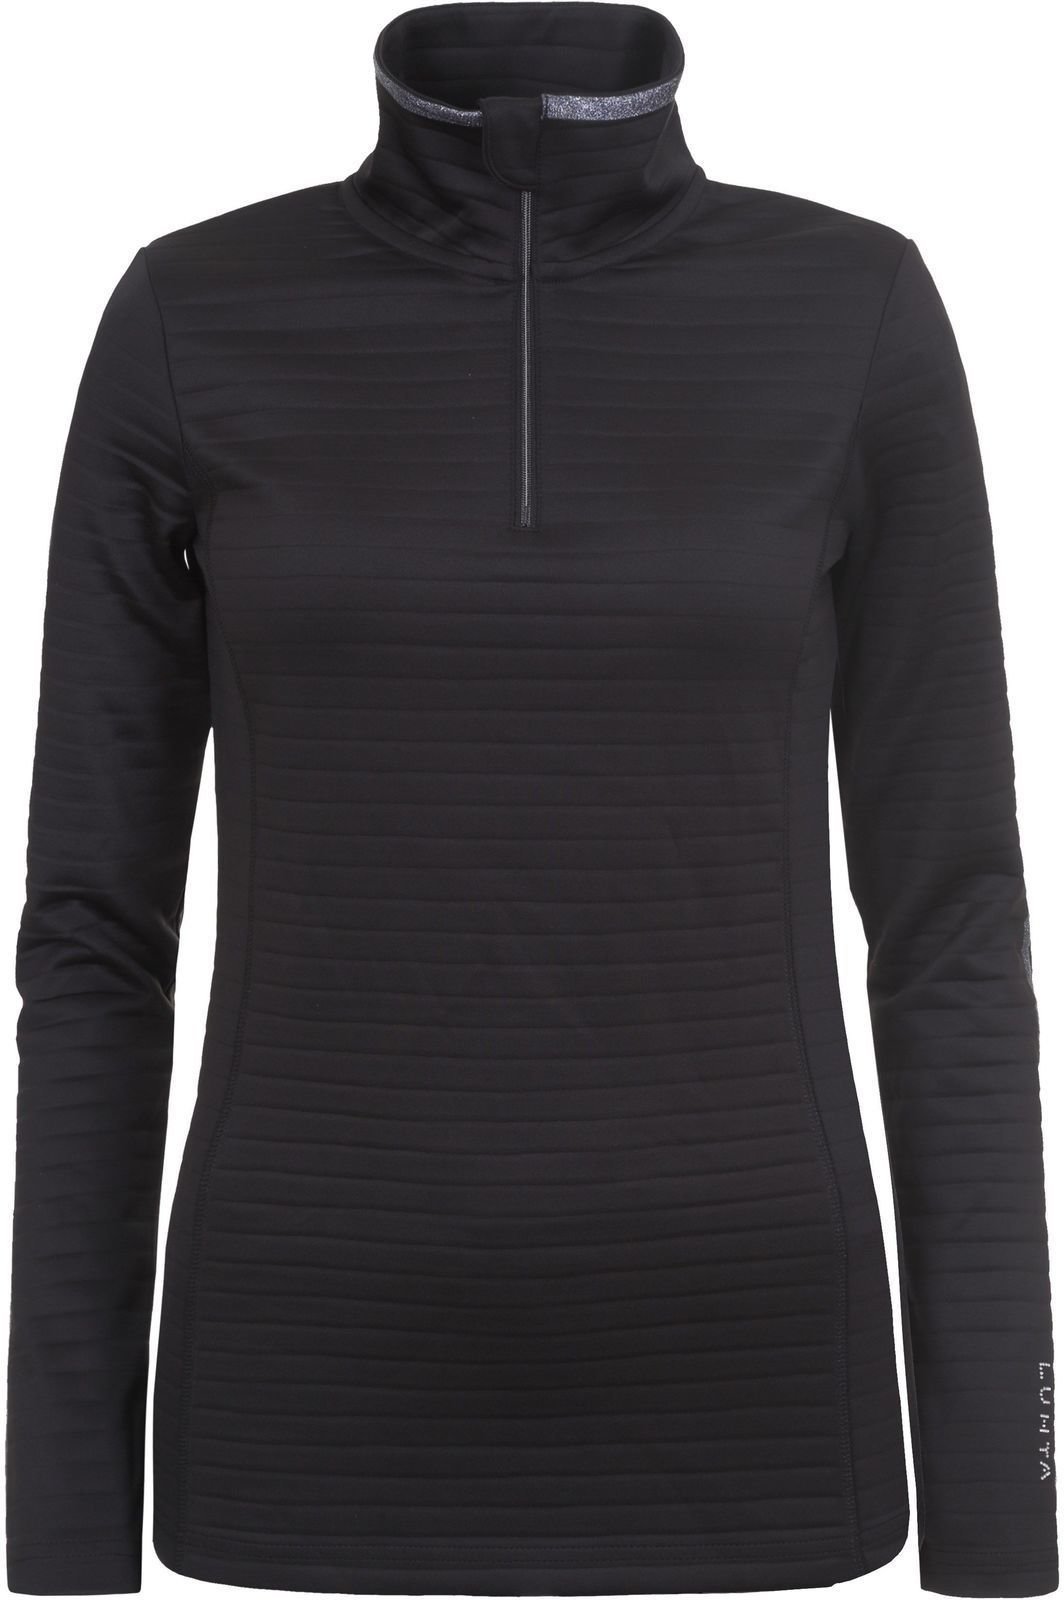 Bluzy i koszulki Luhta Halssila Womens Sweater Czarny XS Sweter